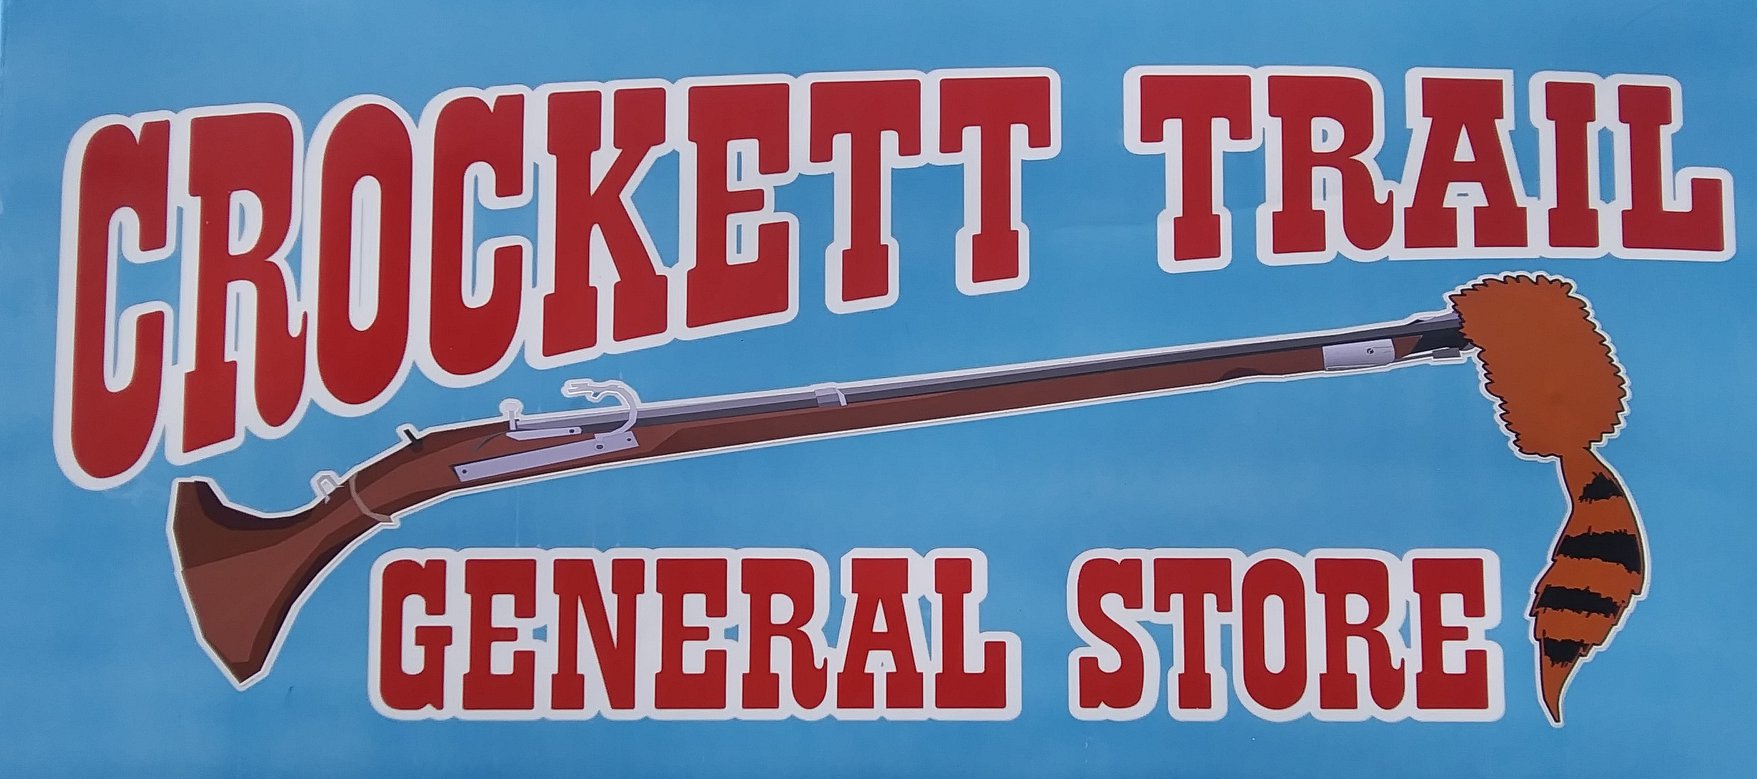 Crockett Trail General Store